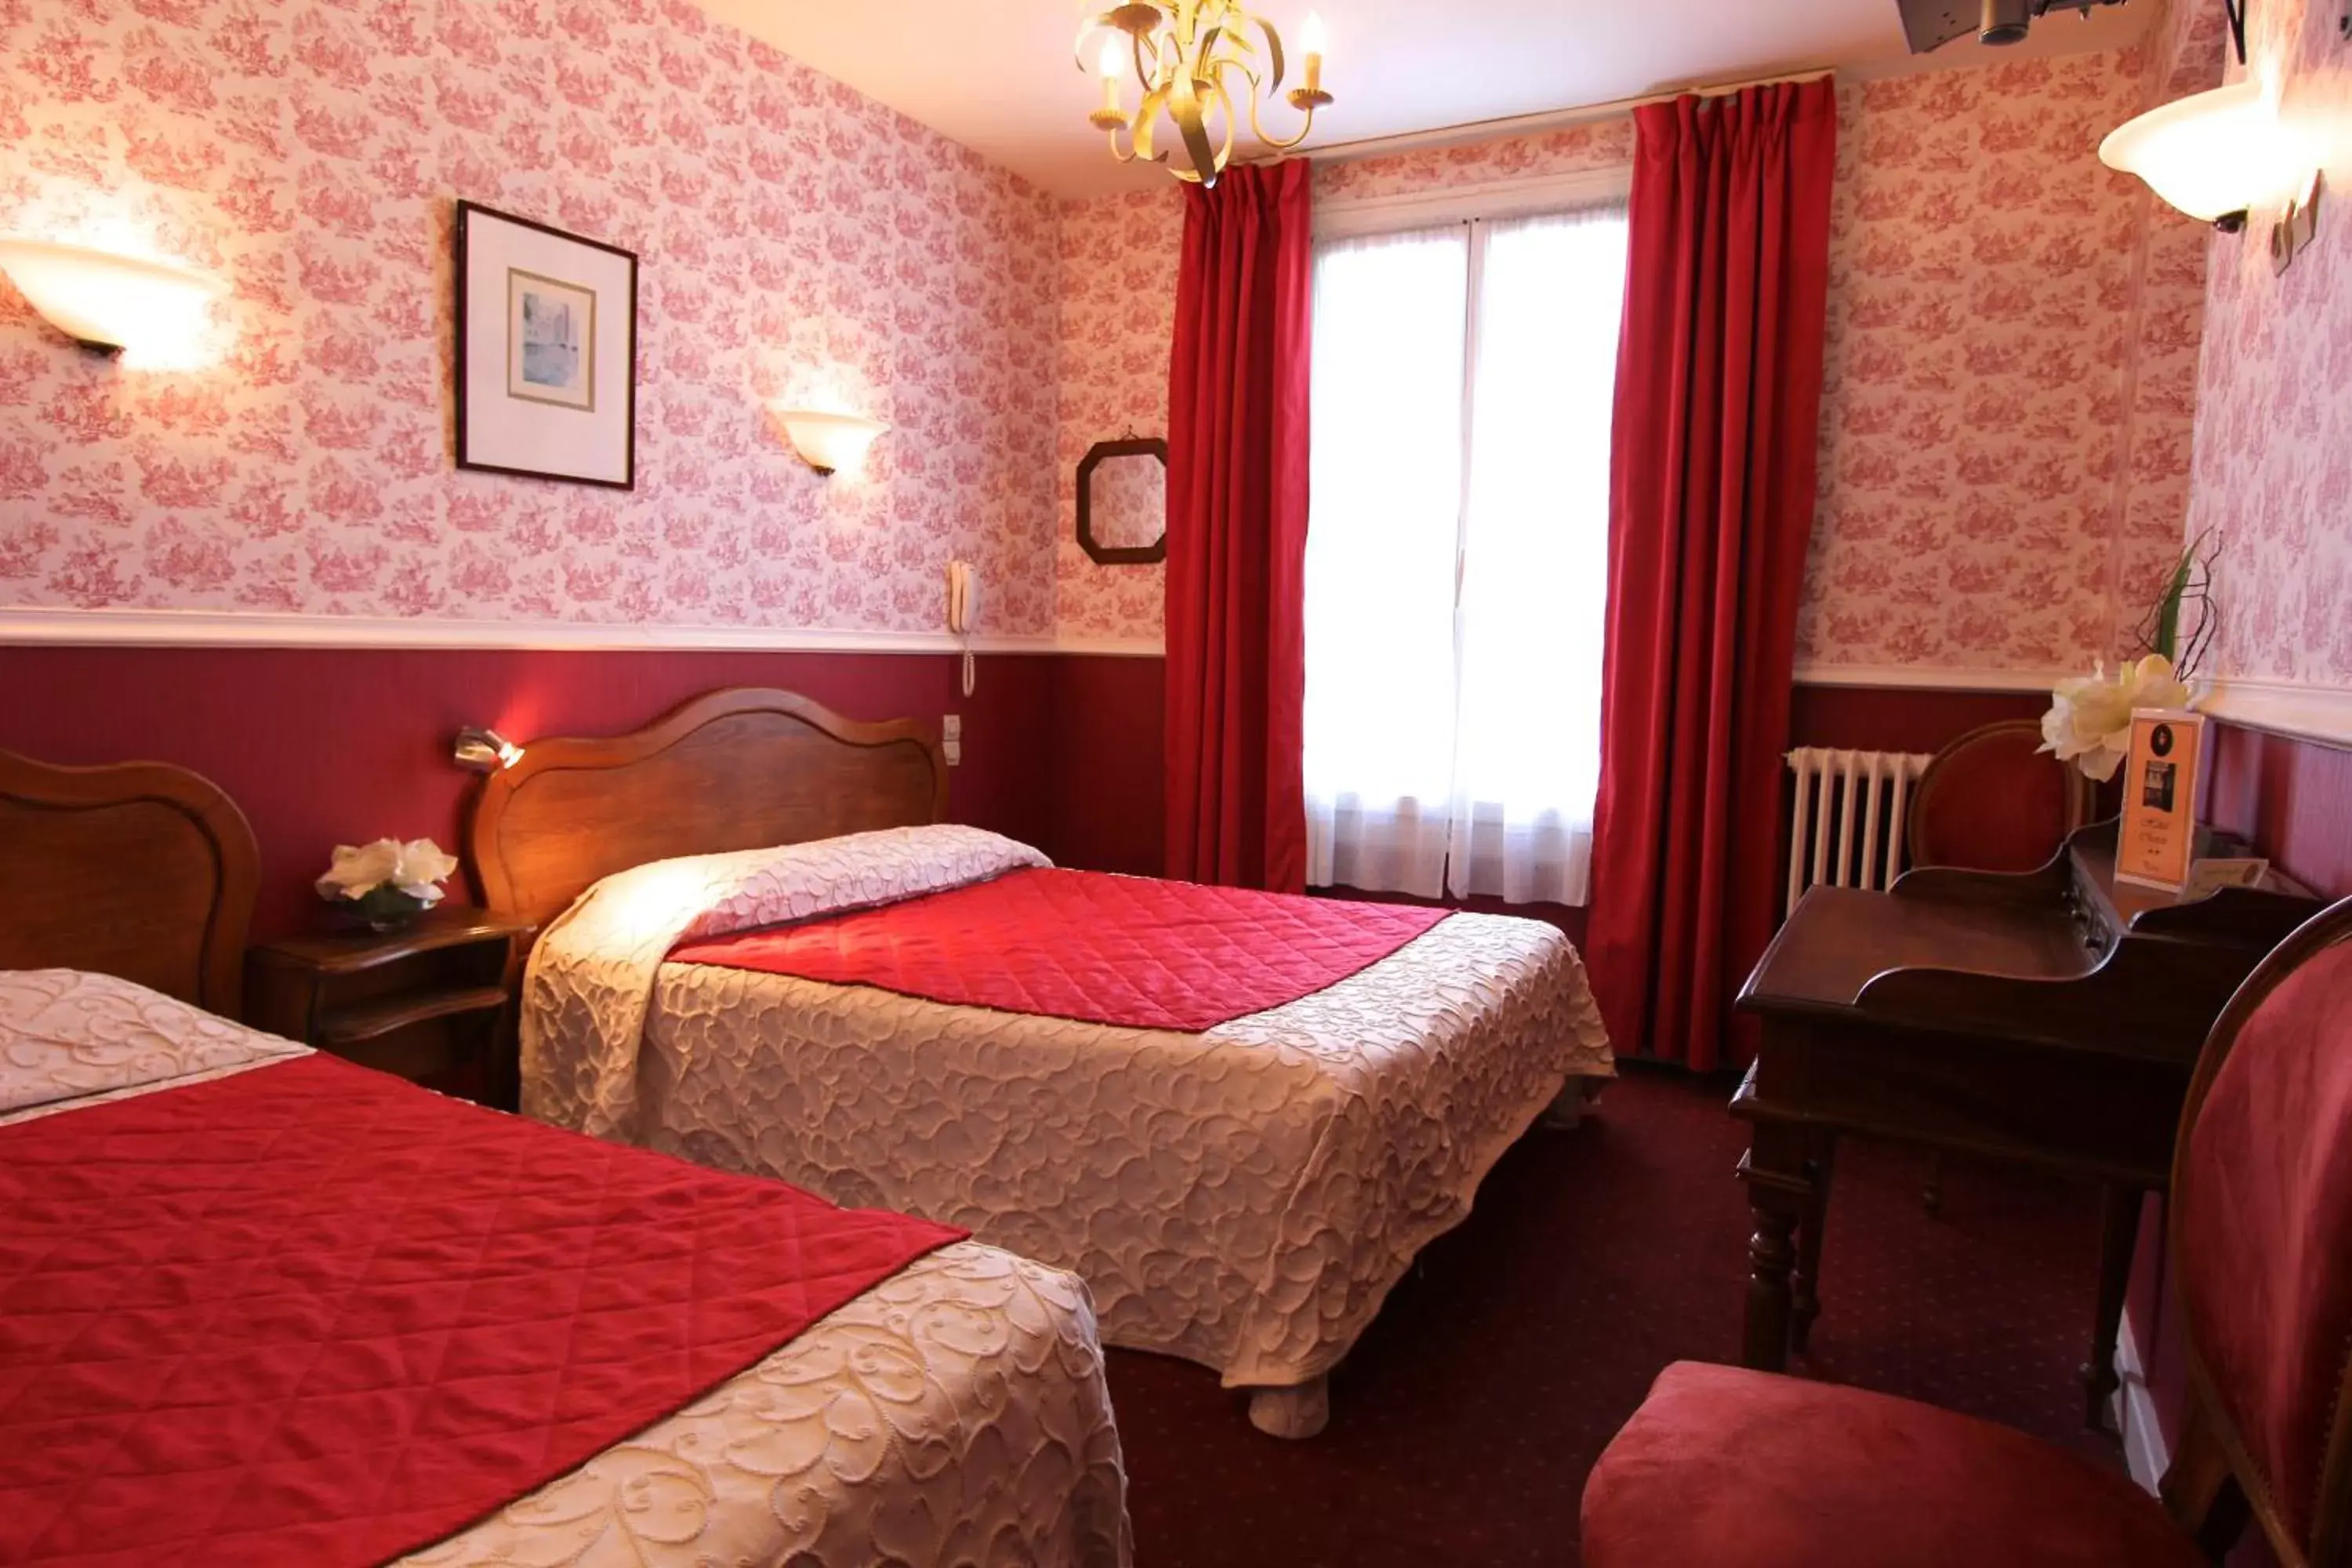 Bedroom, Room Photo in Hôtel Chopin